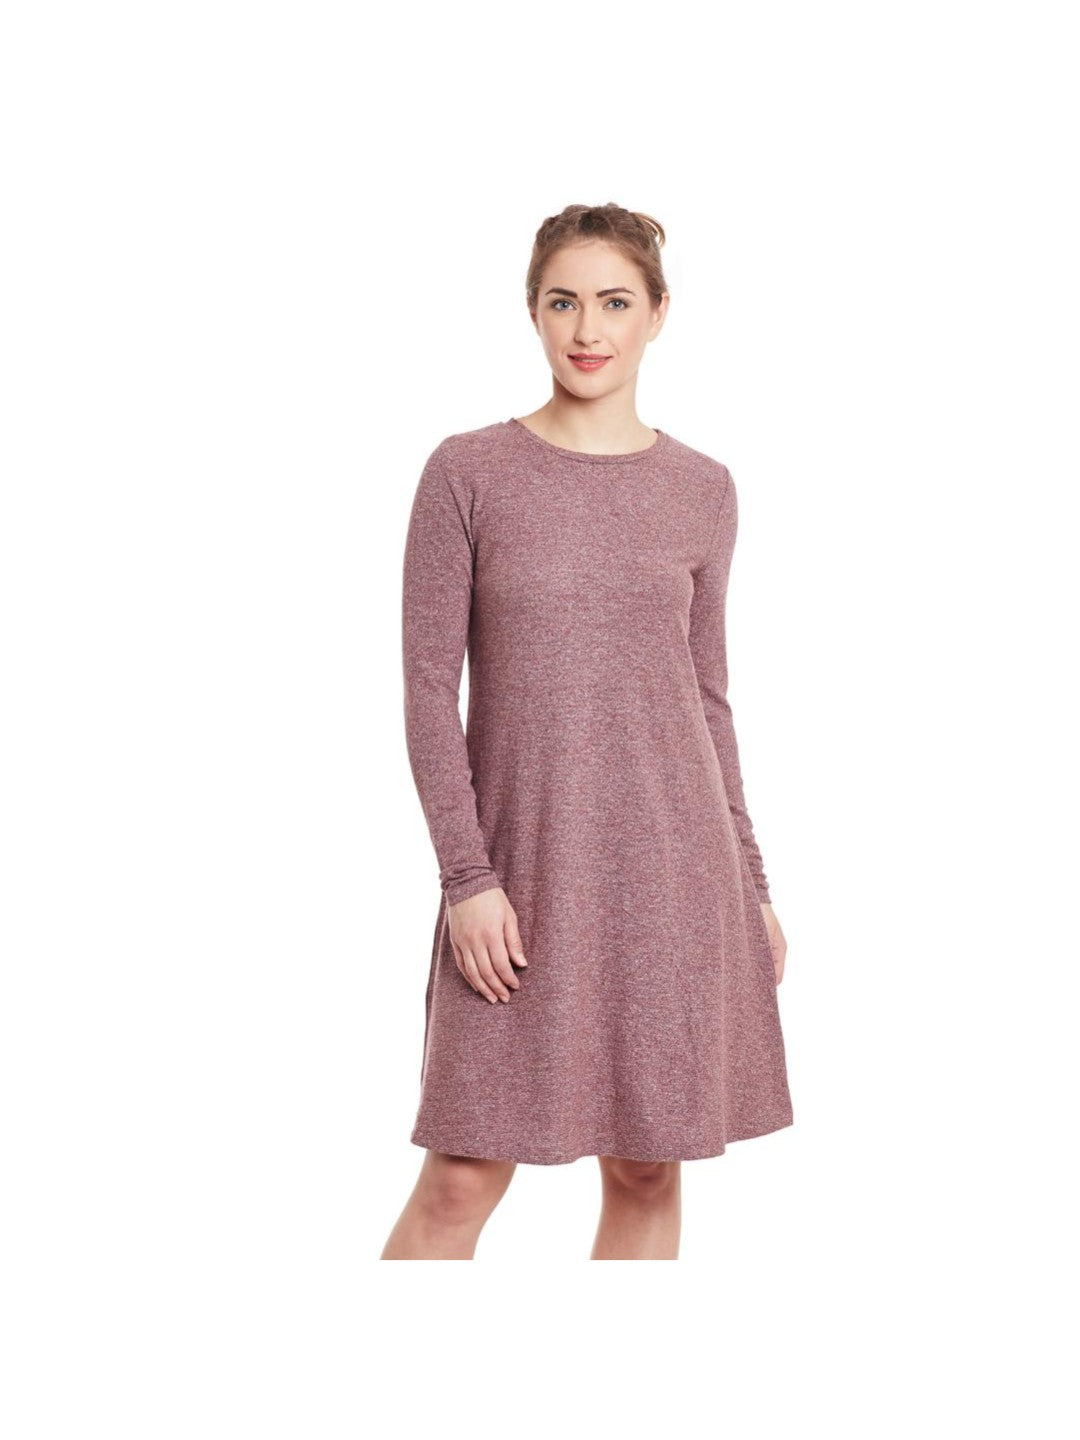 A-Line Cotton Jersey Dress